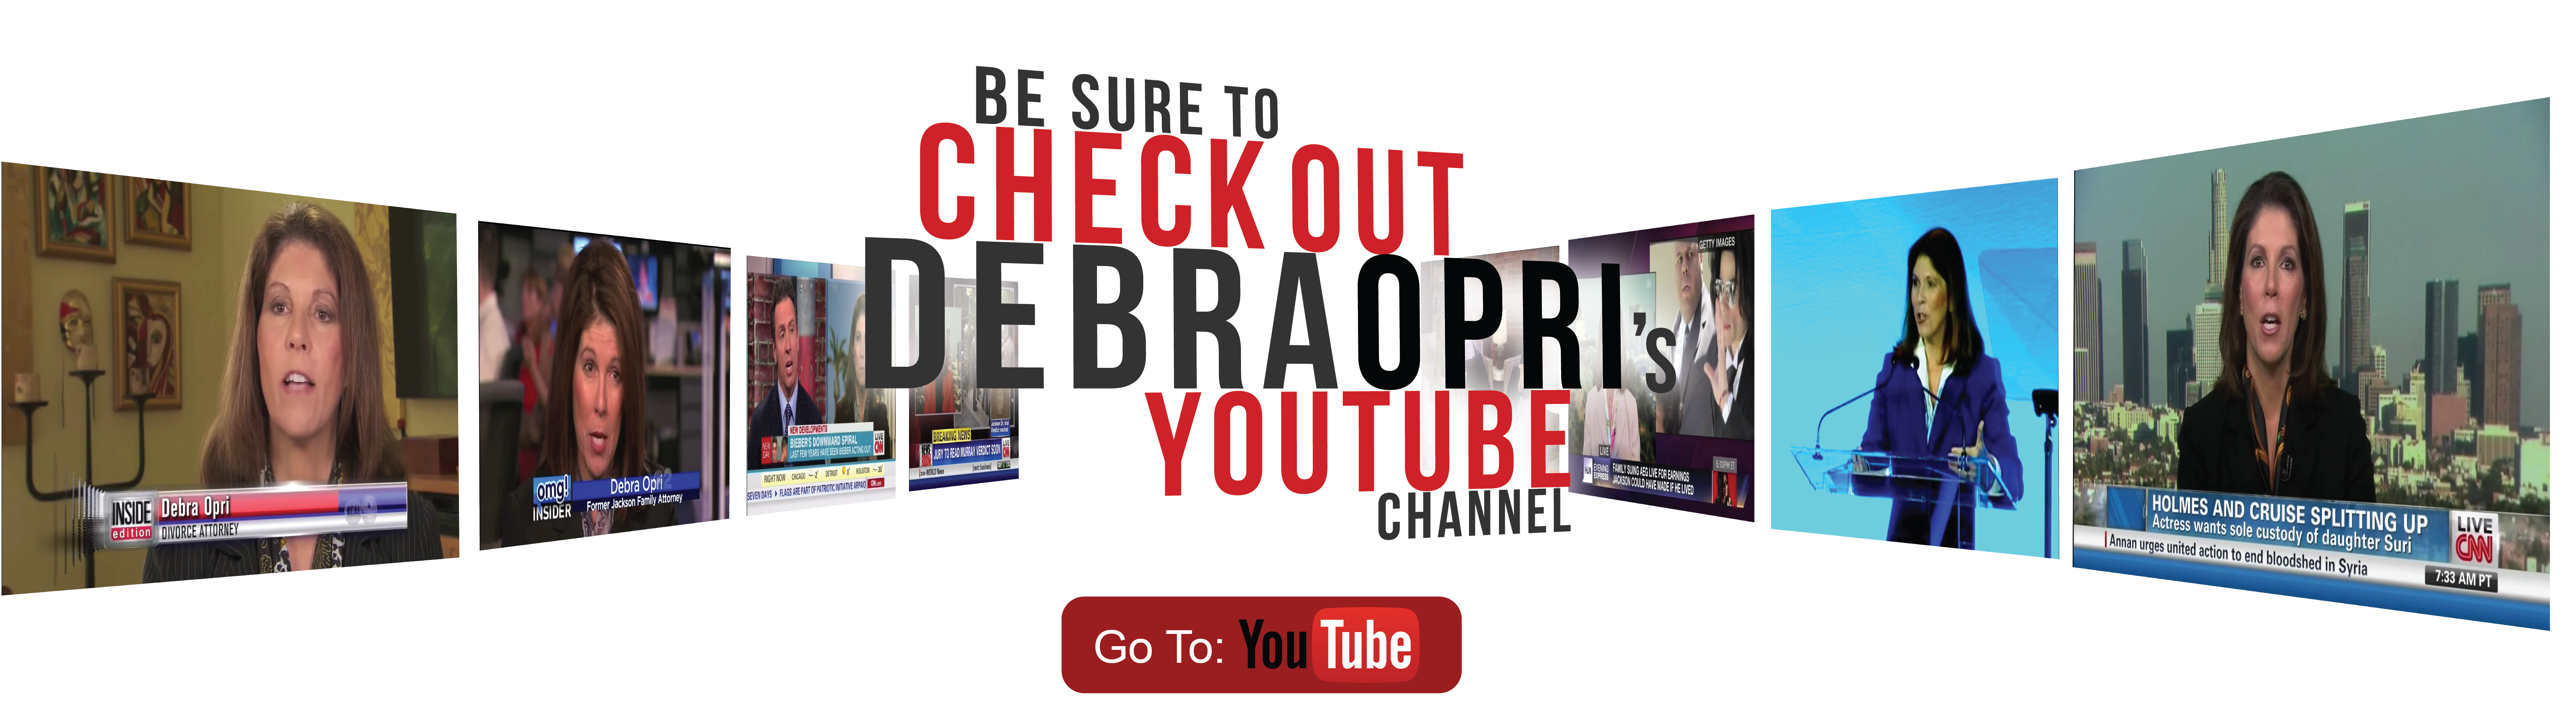 Check out Debra Opri's Youtube Page